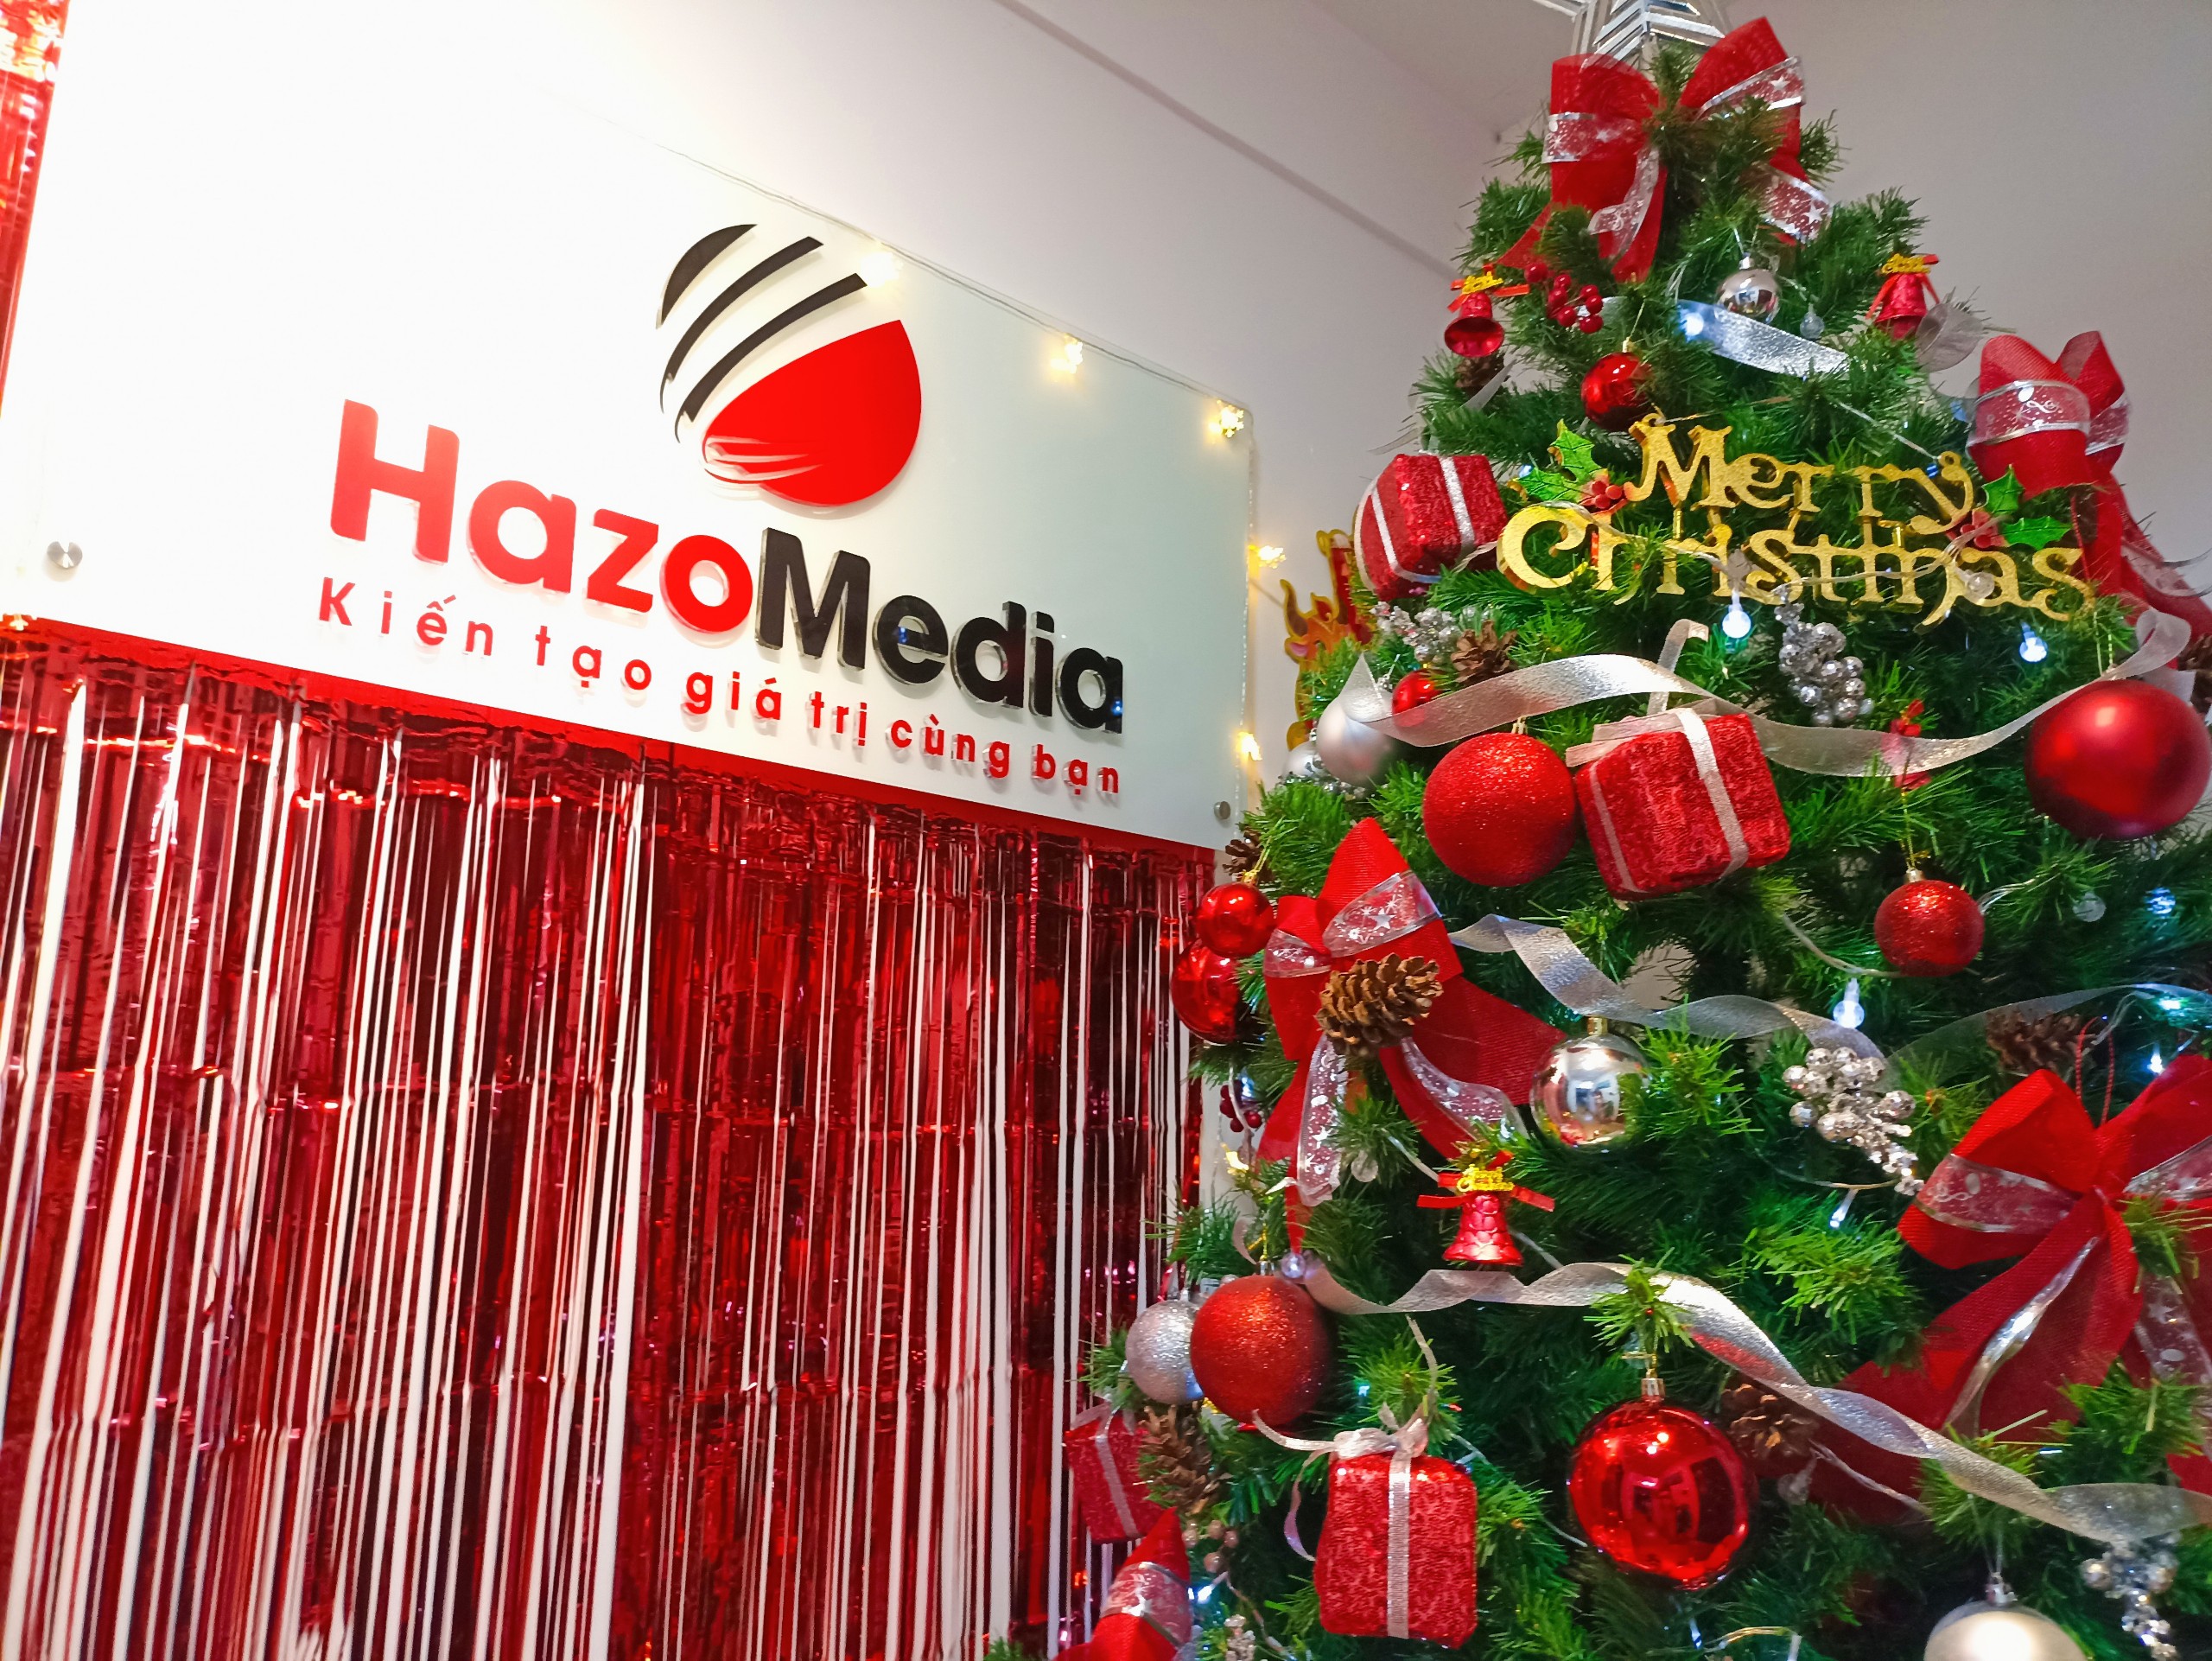 Tưng bừng không khí lễ hội cuối năm tại Hazo Media